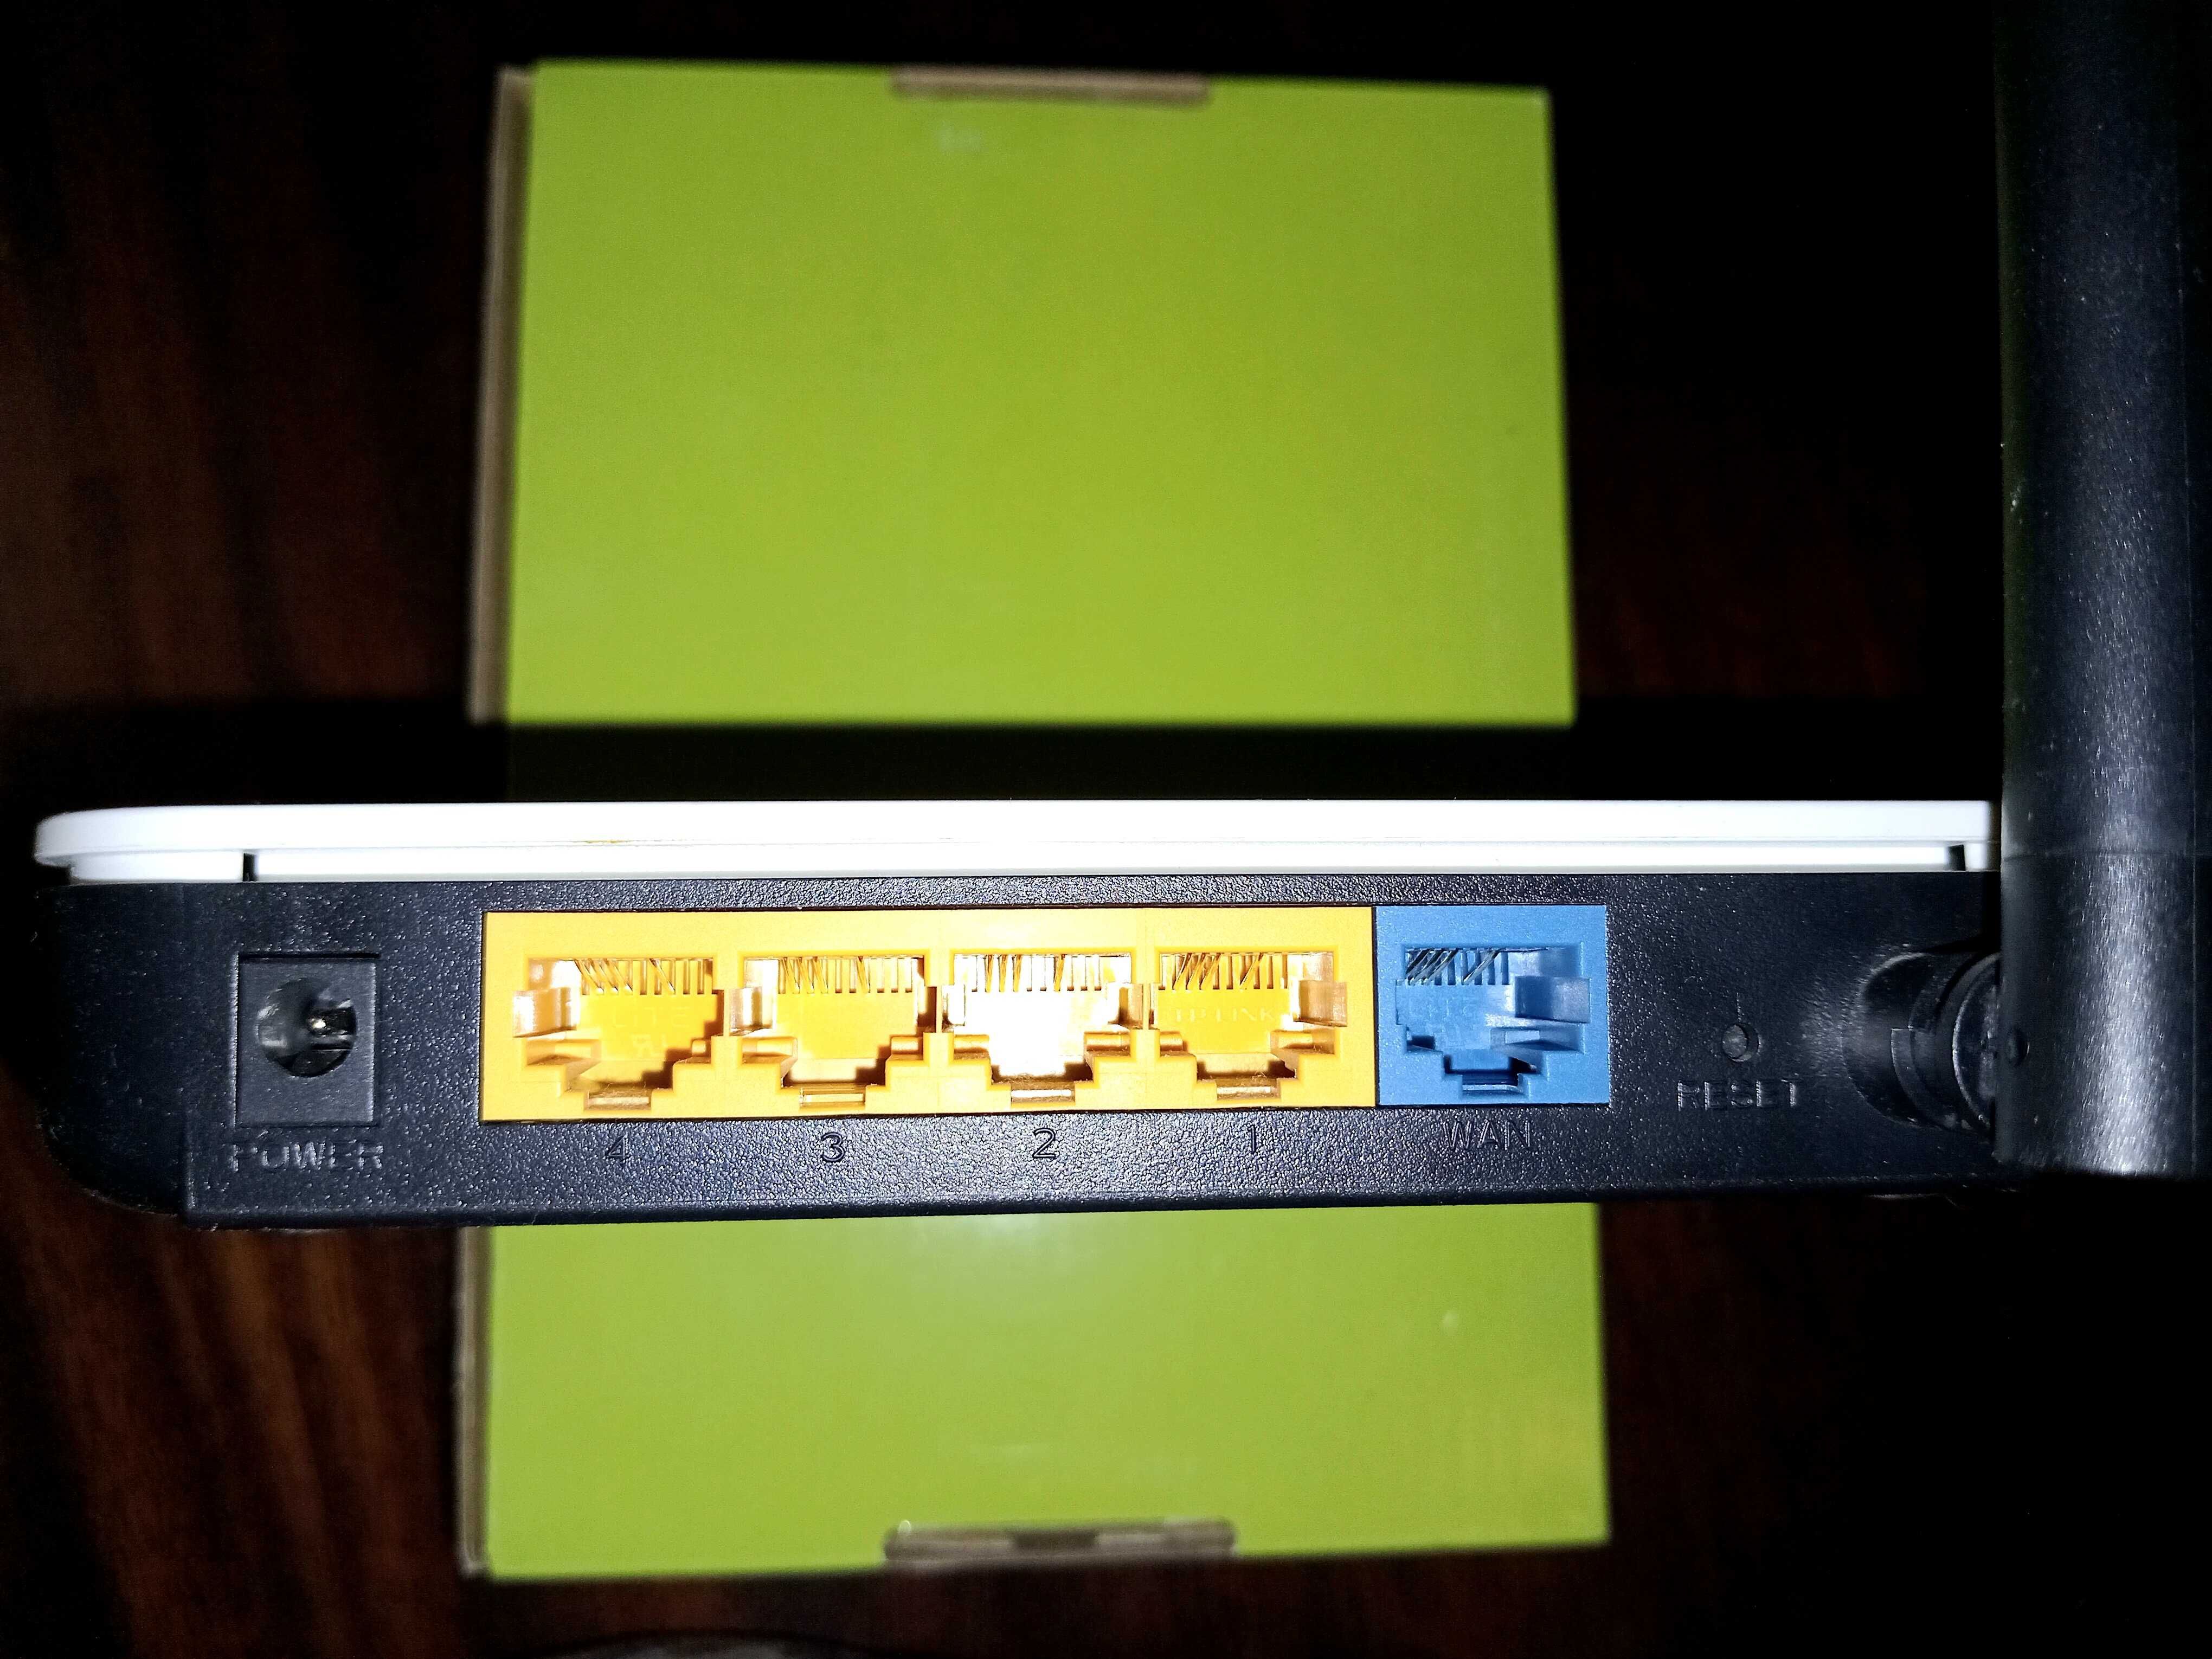 модем TP-Link TL-WR340G / wi-fi роутер